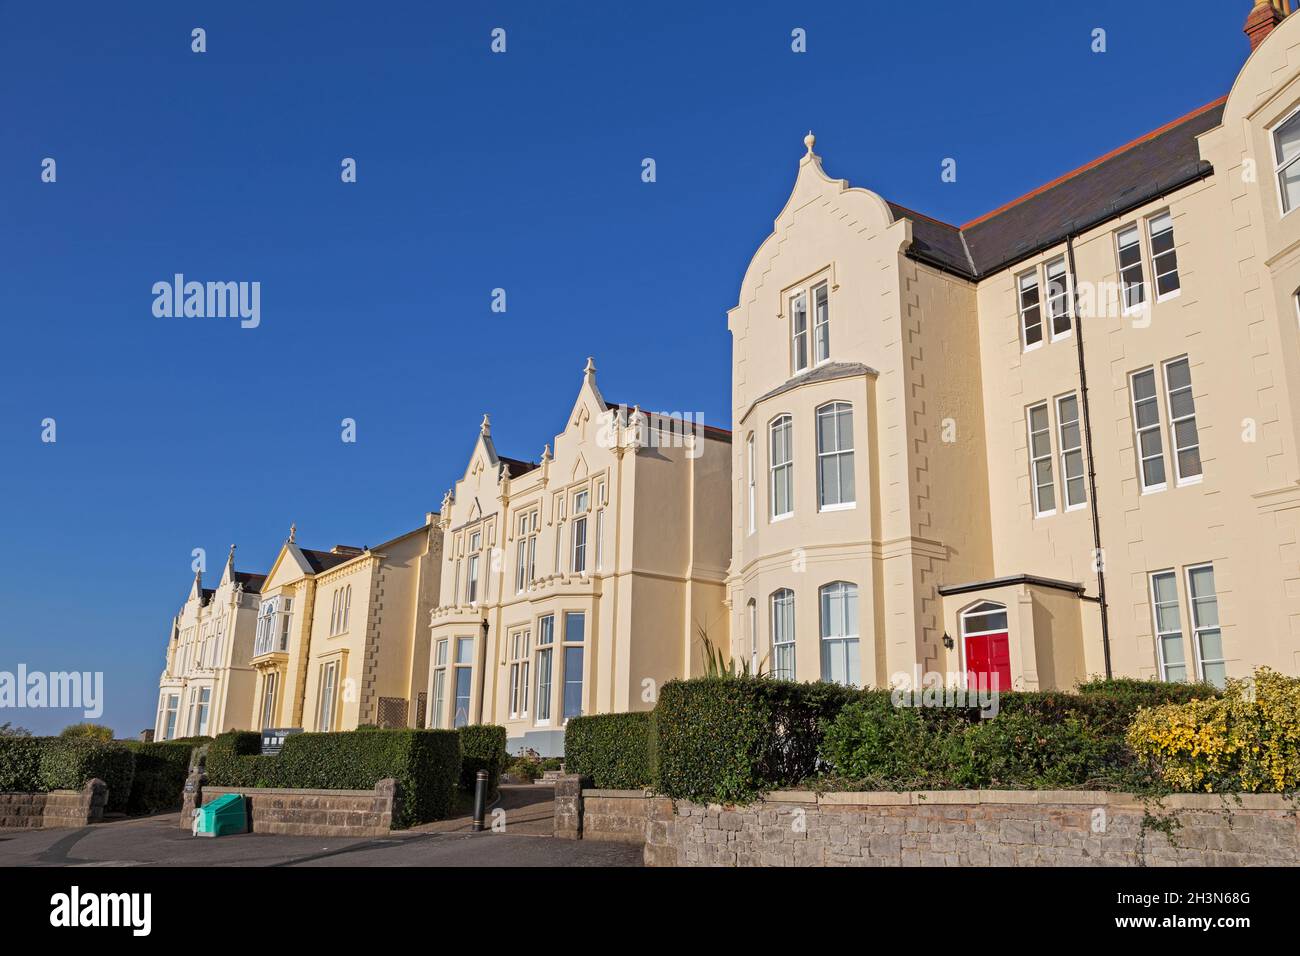 Una fila de casas victorianas en Weston-super-Mare, Reino Unido que una vez fueron parte del Weston College y ahora han sido convertidas en pisos. Foto de stock